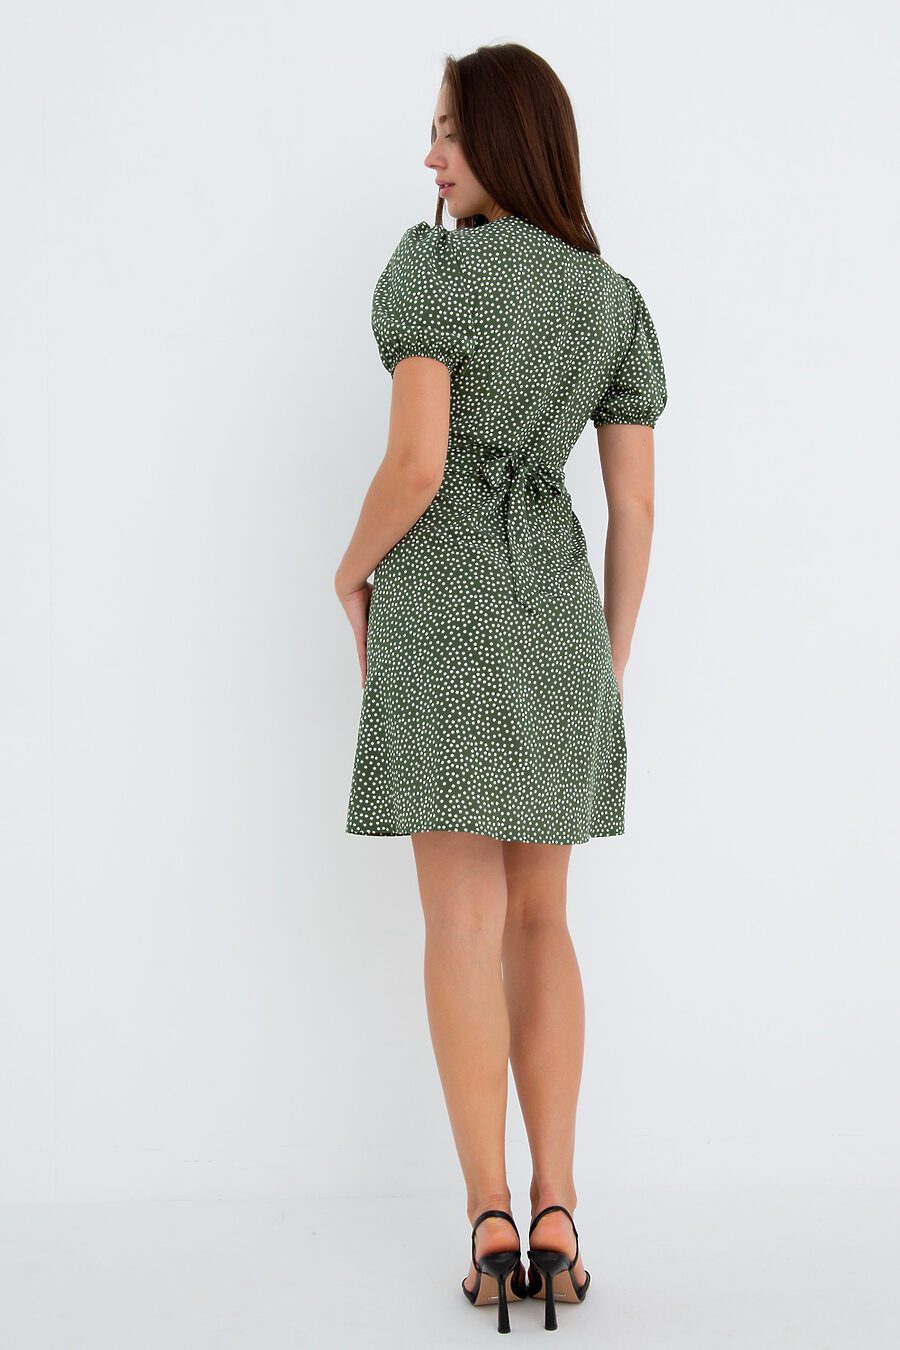 Платье П-18 для женщин НАТАЛИ 775472 купить оптом от производителя. Совместная покупка женской одежды в OptMoyo